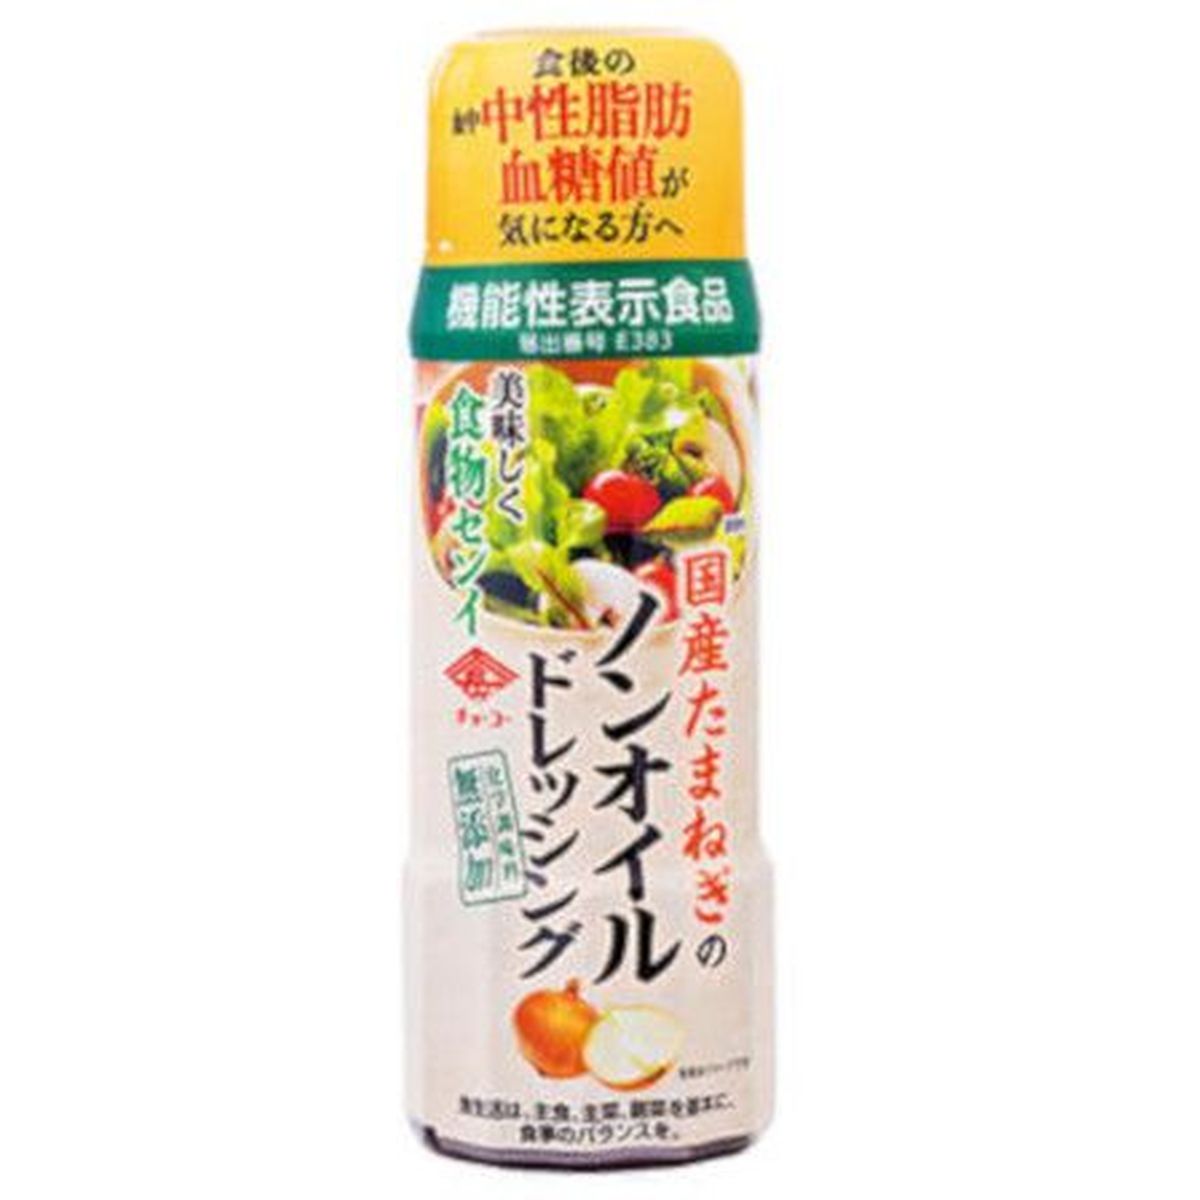 【12個入リ】チョーコー醤油 タマネギノンオイルドレッシング 200ml